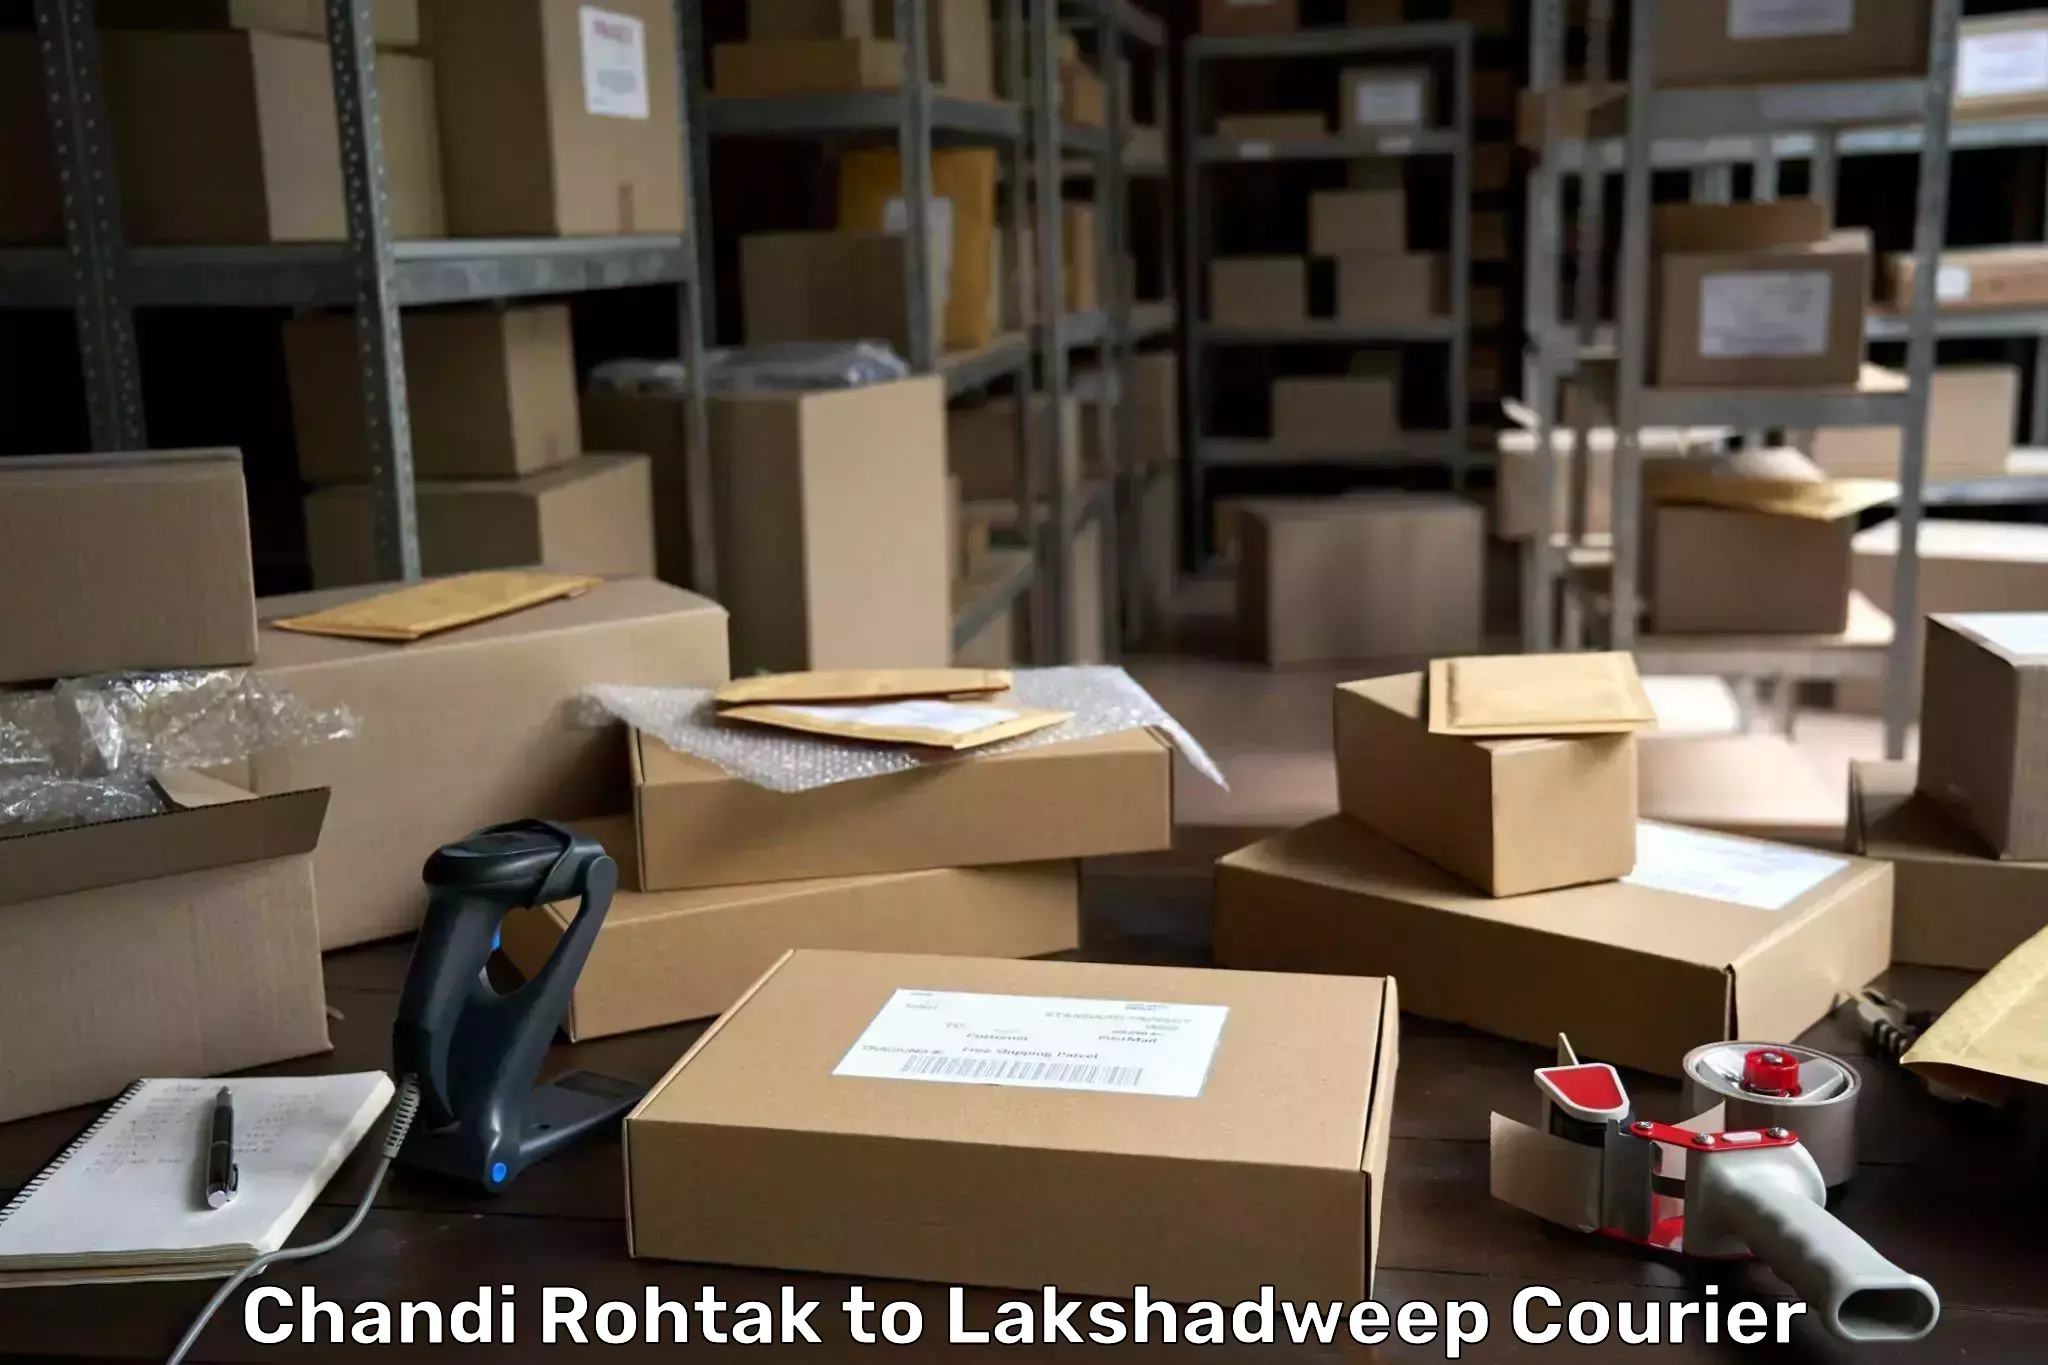 Smart shipping technology Chandi Rohtak to Lakshadweep